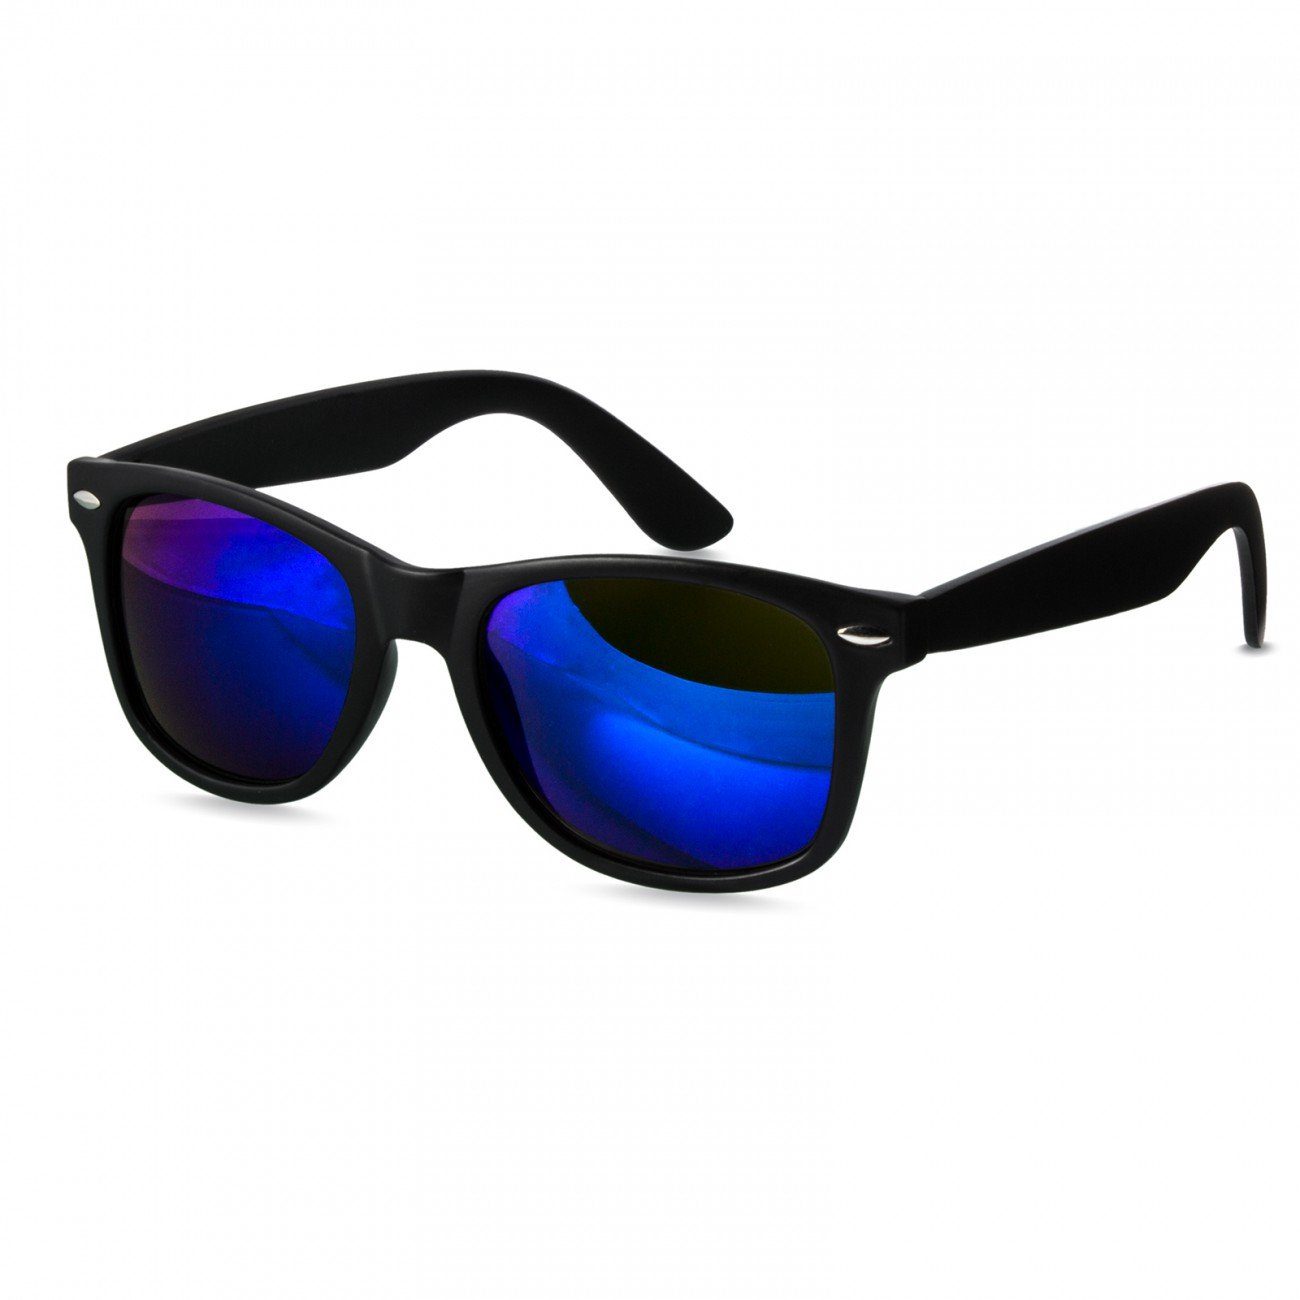 SG017 Sonnenbrille schwarz blau / verspiegelt Caspar RETRO Designbrille matt Damen kpl.